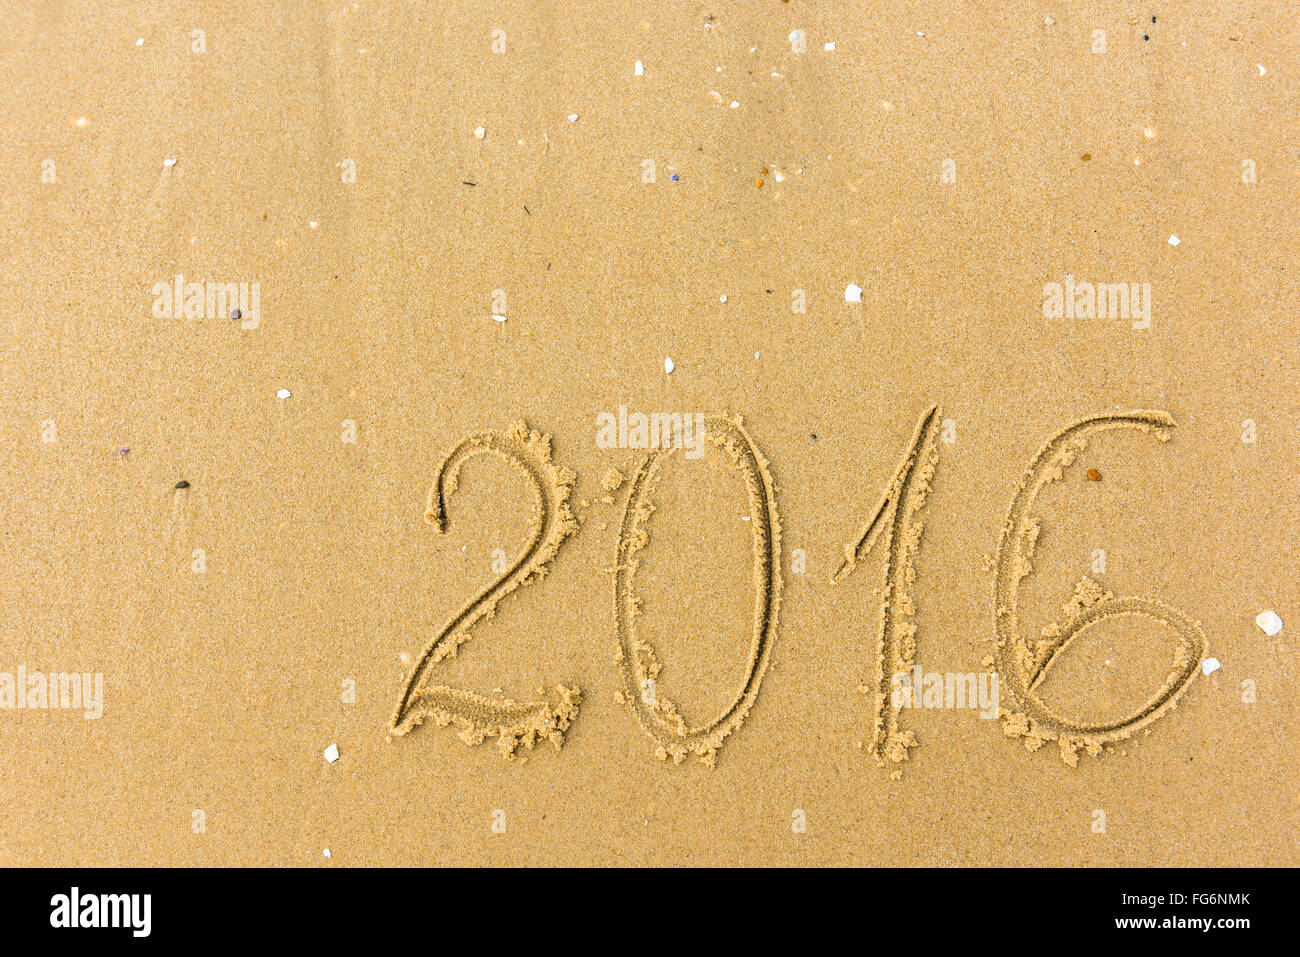 L'année 2016 écrit sur la plage de sable contexte. Banque D'Images